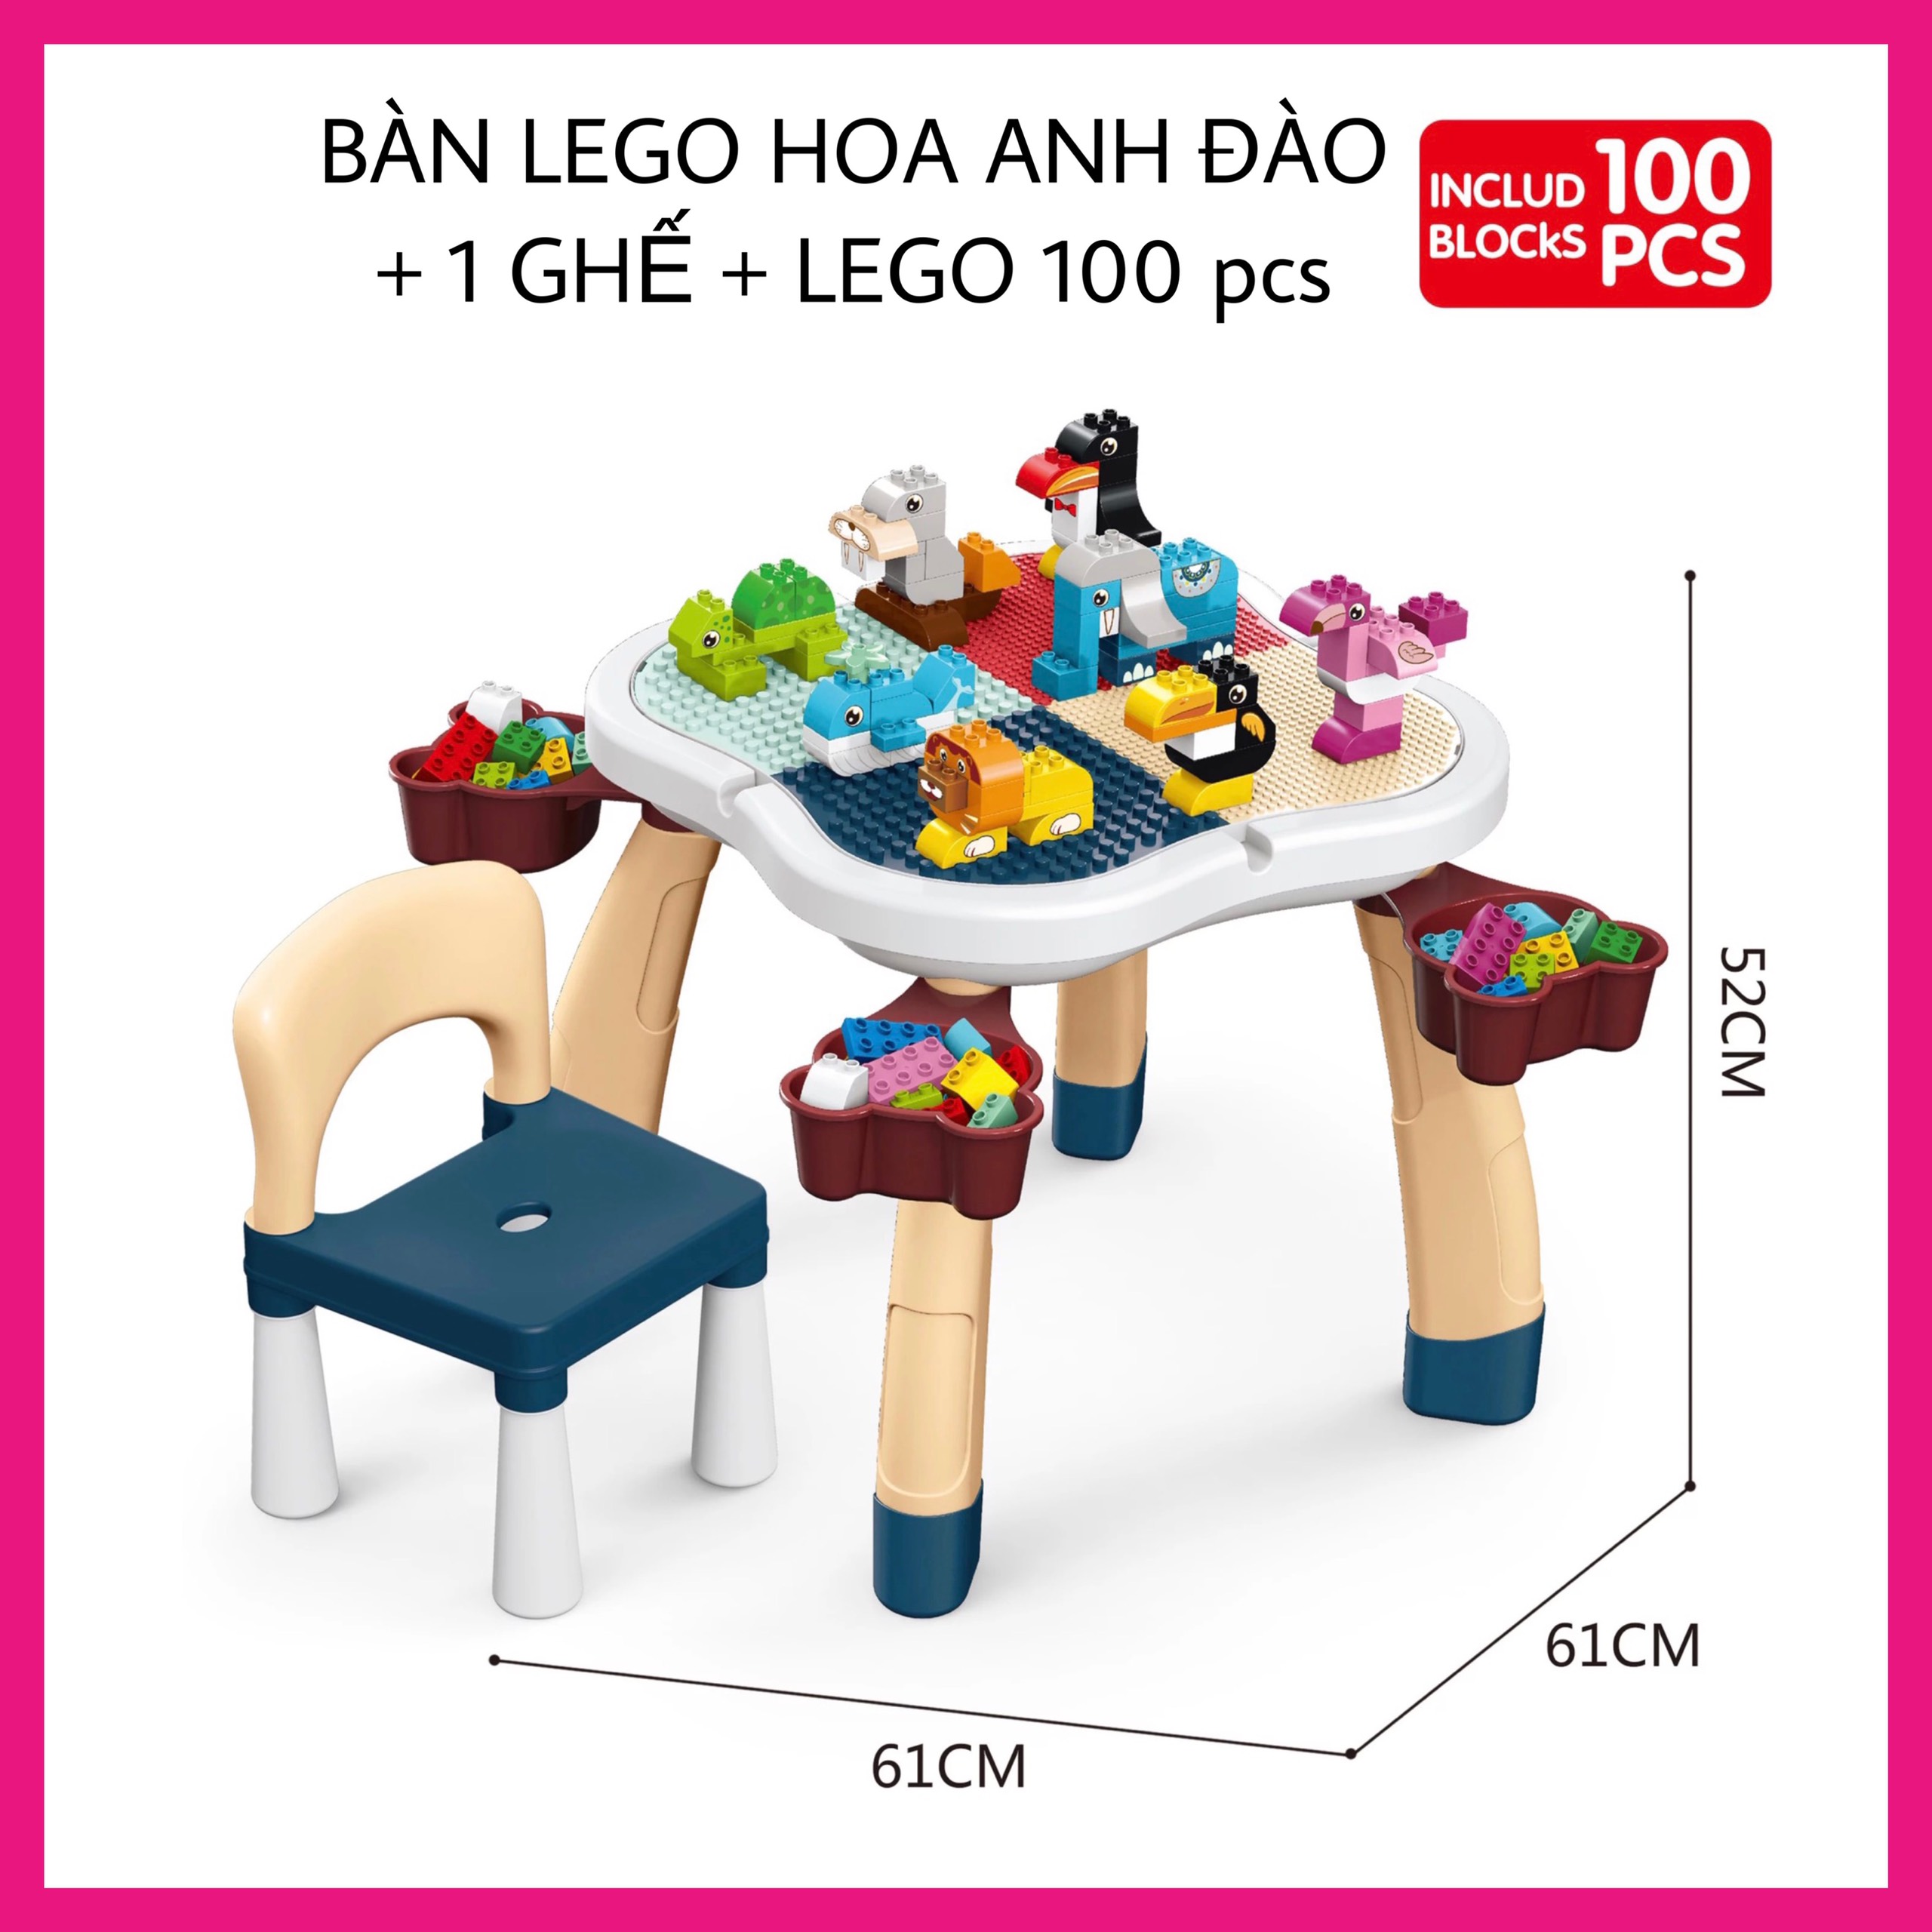 Bộ bàn lego đa năng hoa anh đào Bàn học cho bé kèm 85 chi tiết Lego